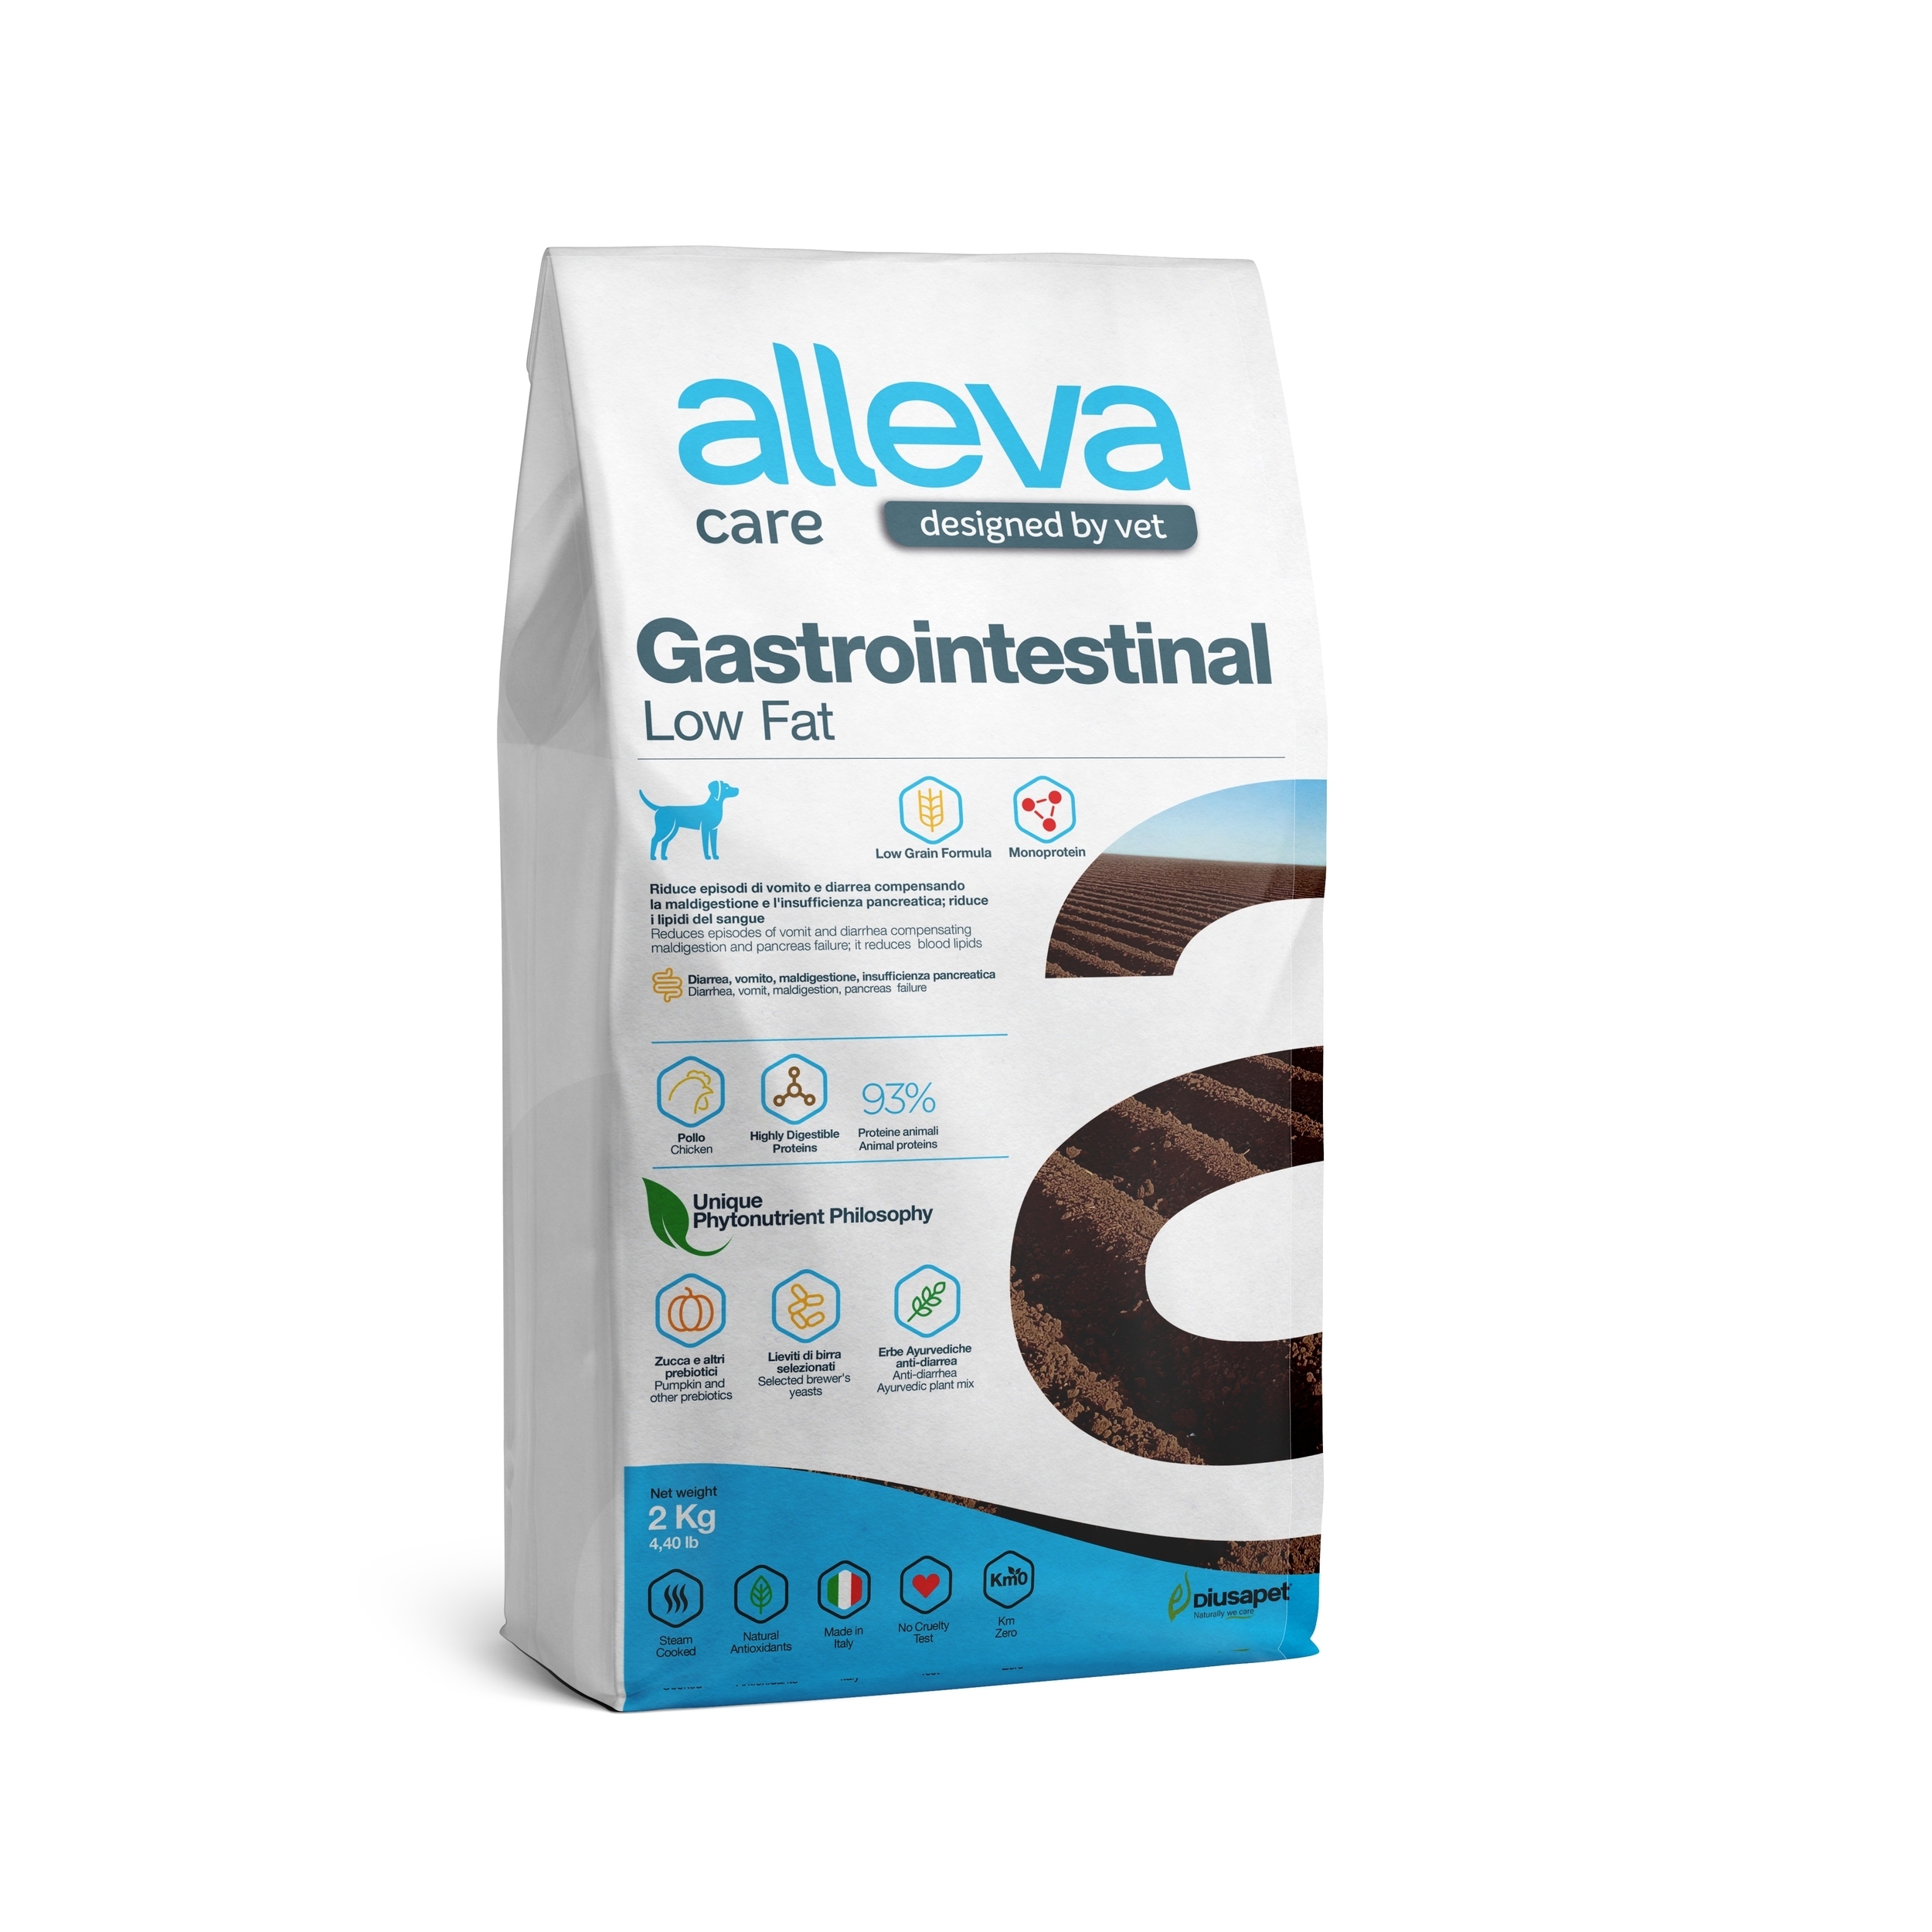 корм для собак "alleva care gastrointestinal low fat" (аллева кэр гастроинтестинал) с низким содержанием жиров